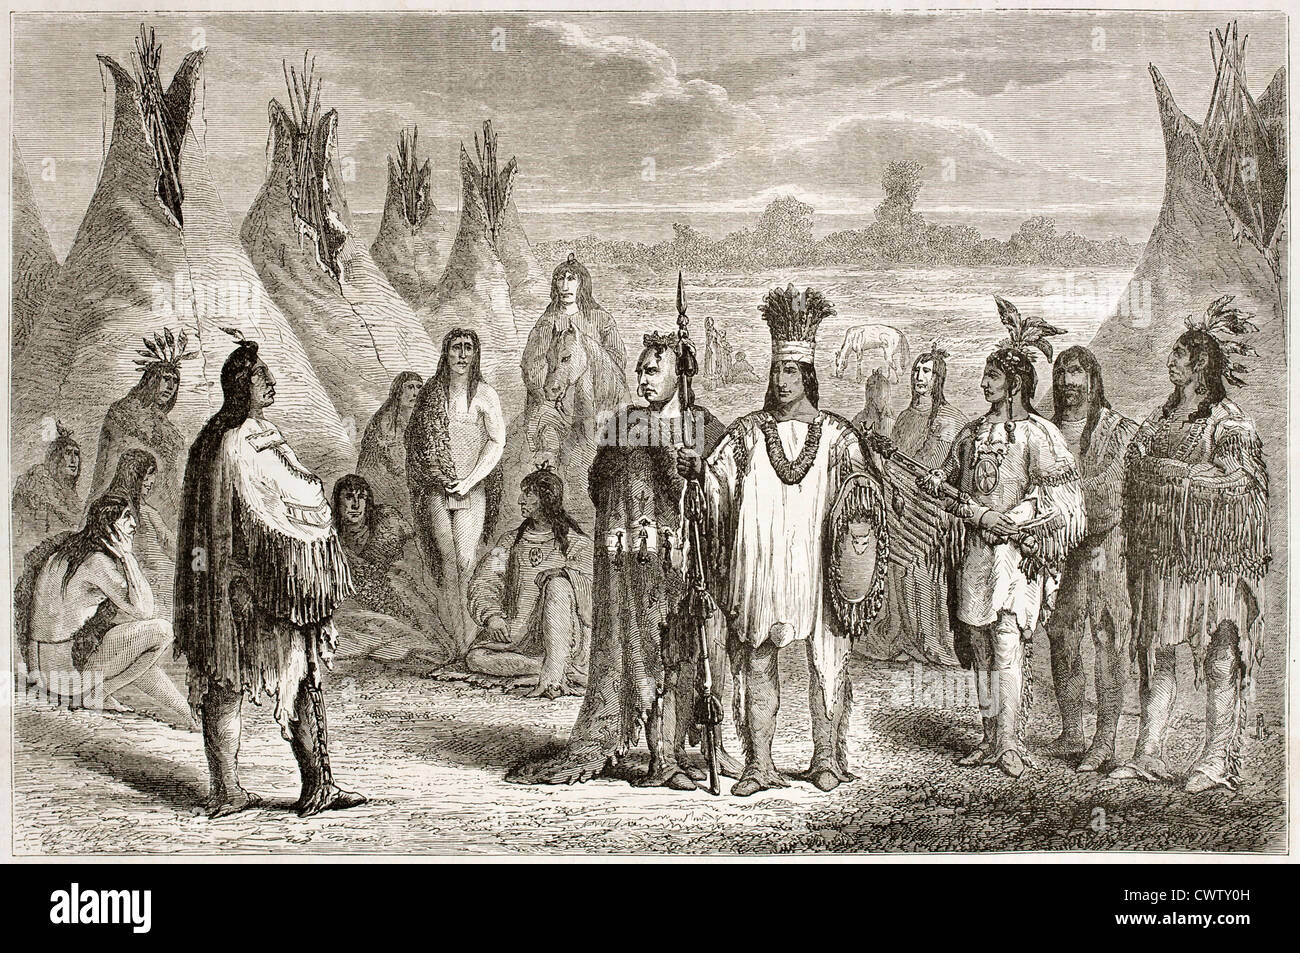 Ilustración antigua de indios Cree Foto de stock